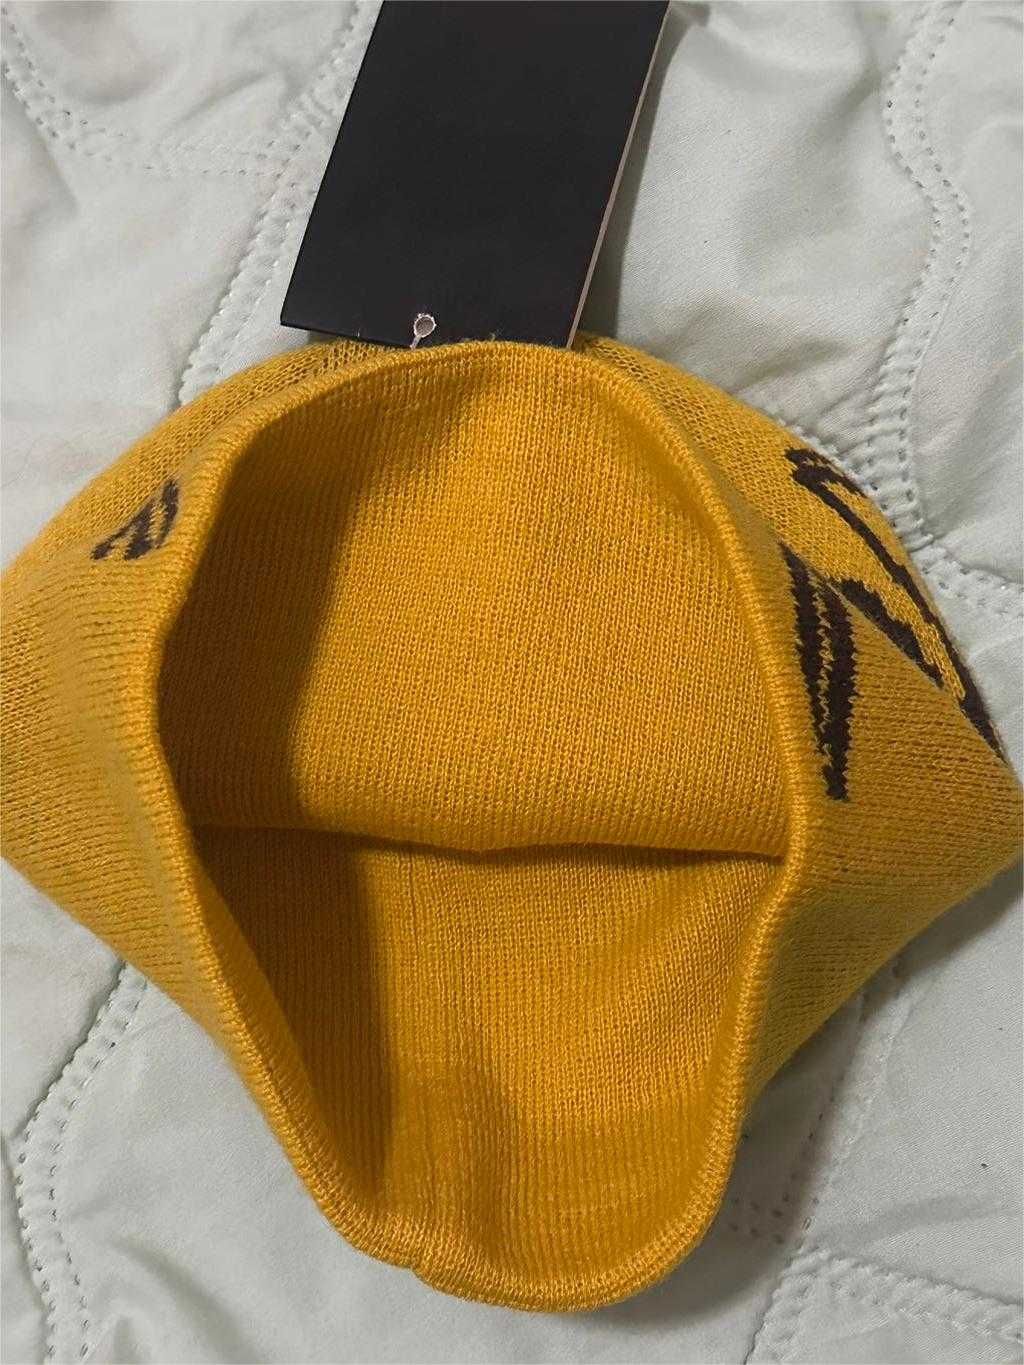 Żółty kapelusz Archeopteryksa